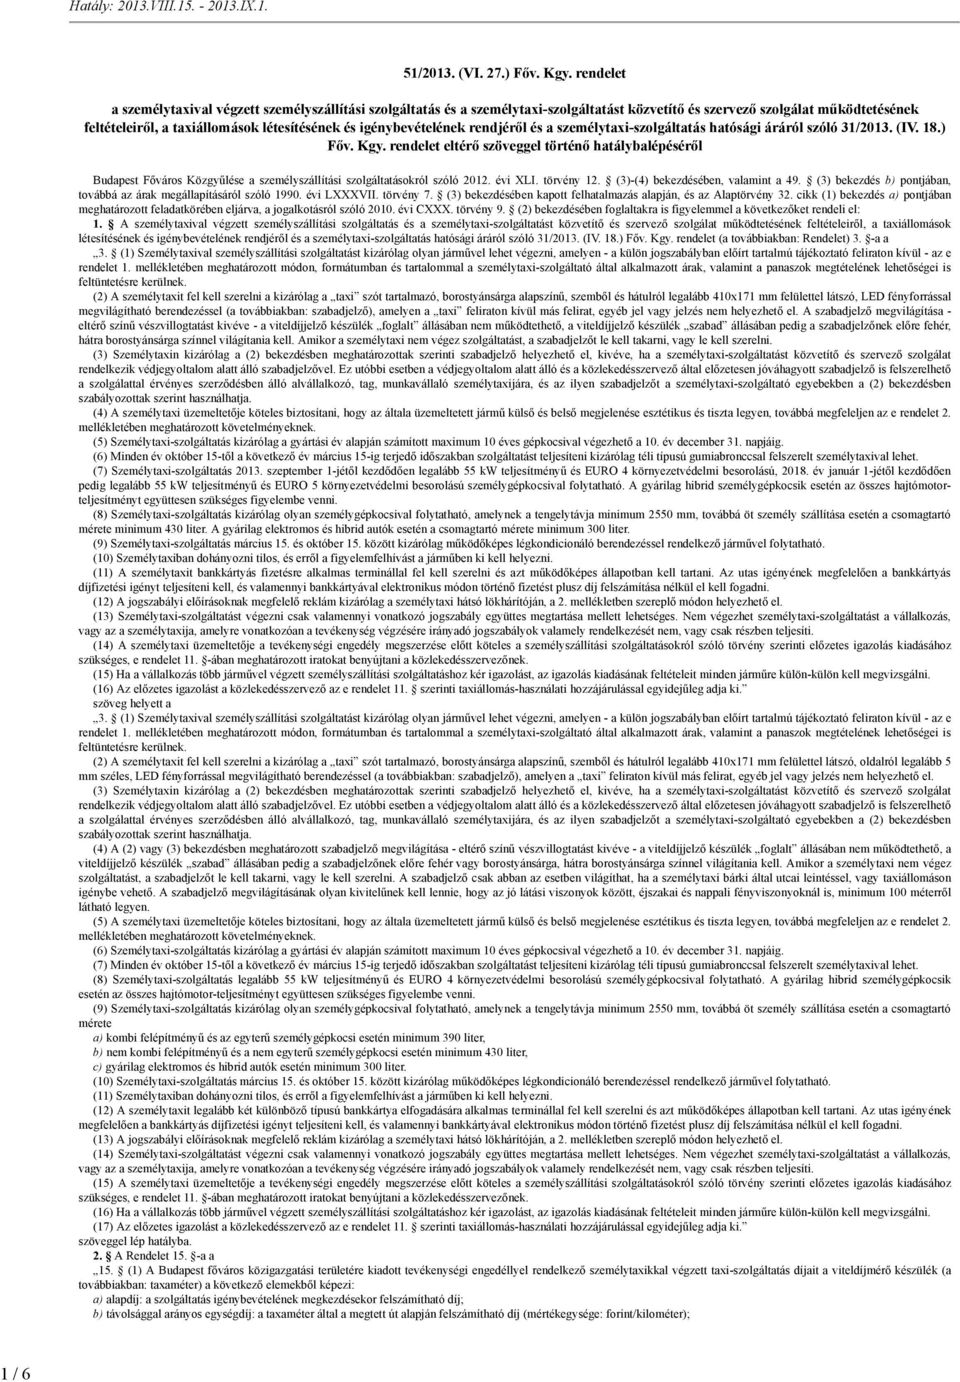 igénybevételének rendjéről és a személytaxi-szolgáltatás hatósági áráról szóló 31/2013. (IV. 18.) Főv. Kgy.